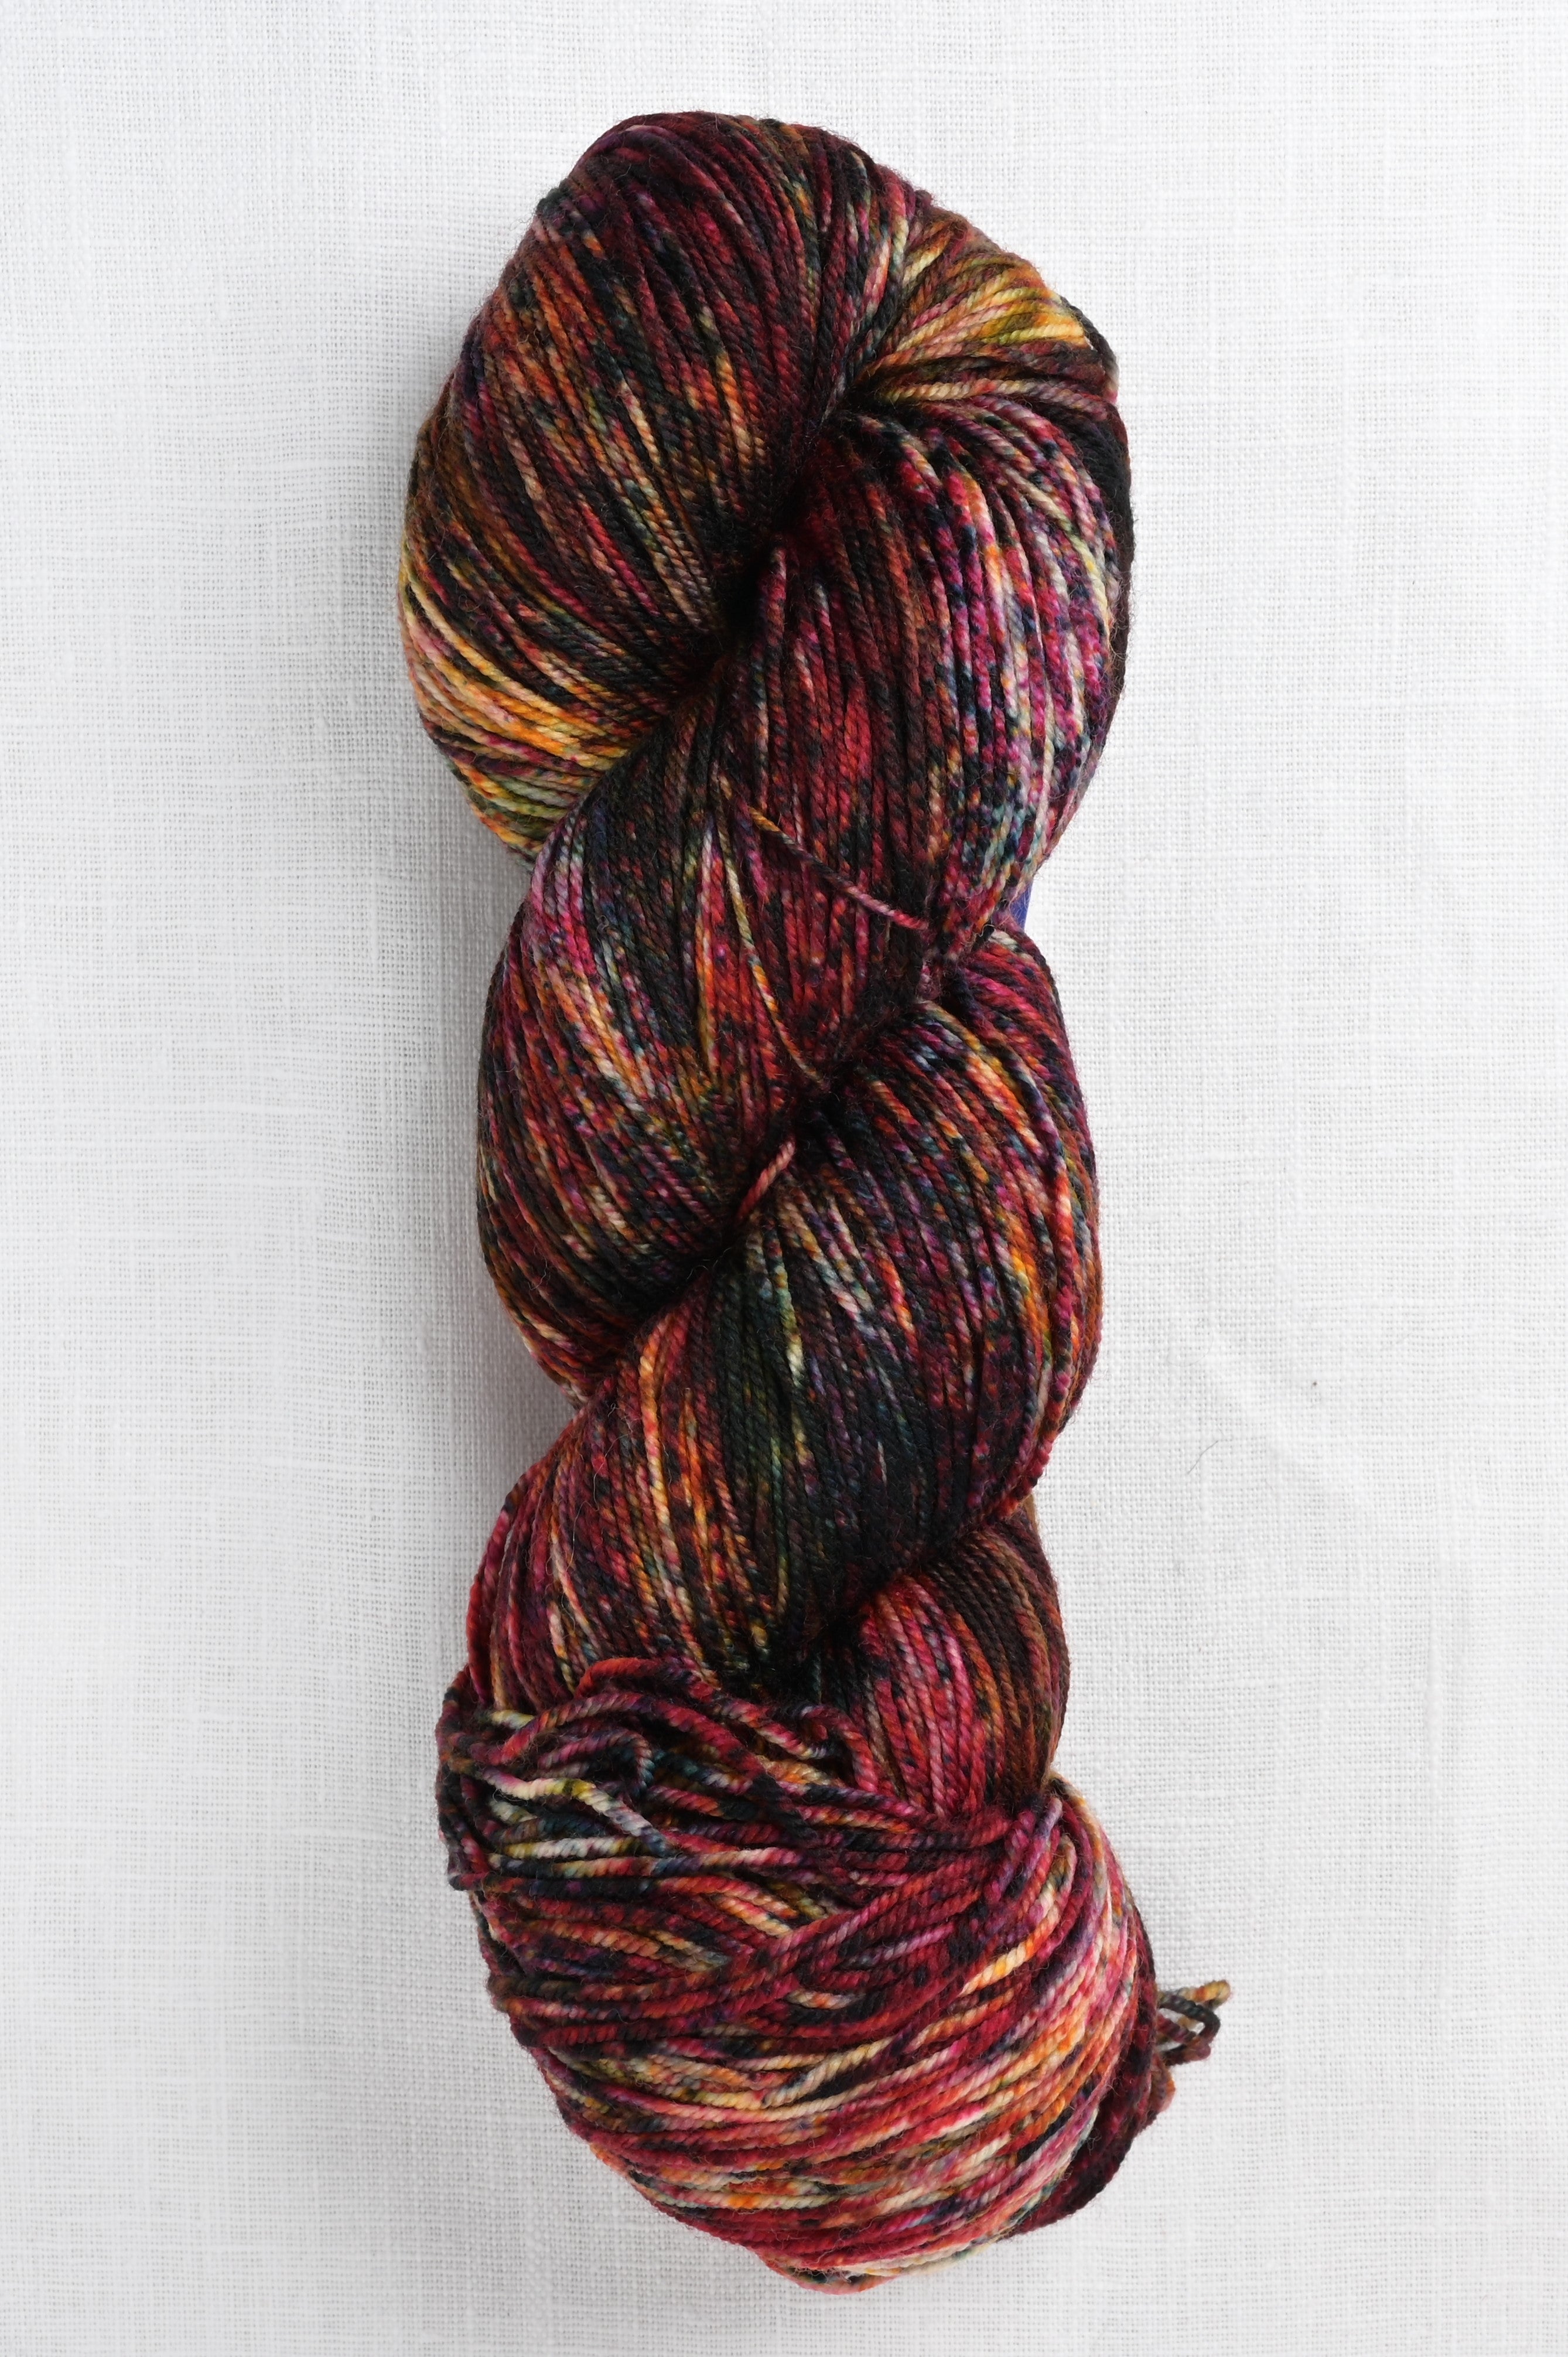 Red Heart Super Saver Yarn, Lavender 0358, Medium 4 - 1 skein, 7 oz